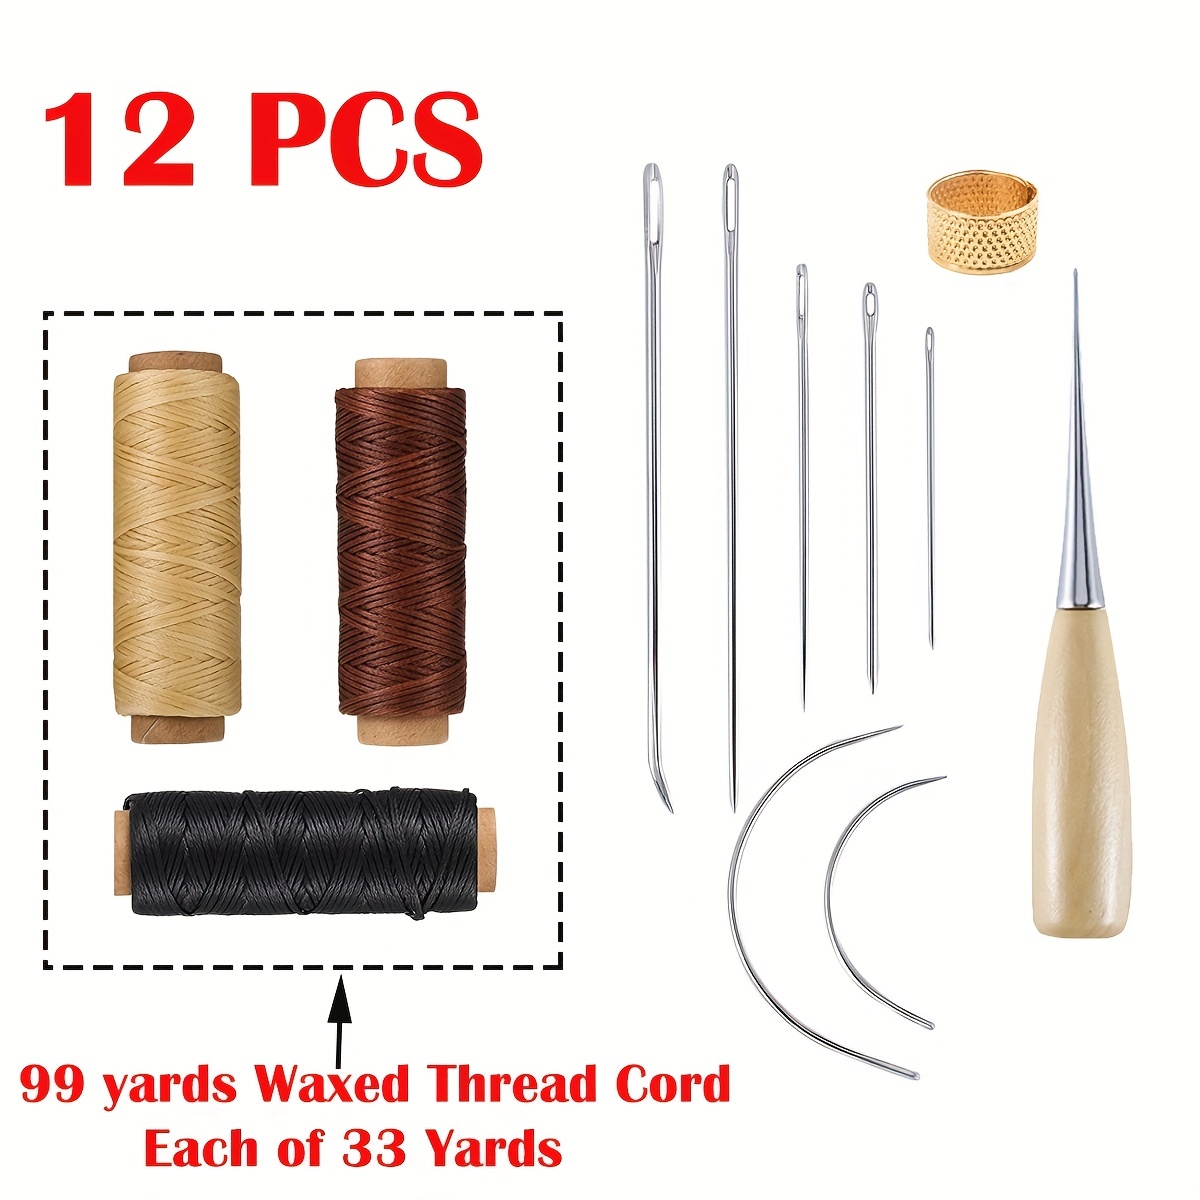 52pcs Wax Sticks for Kids Wax Craft Sticks Wax Yarn Sticks